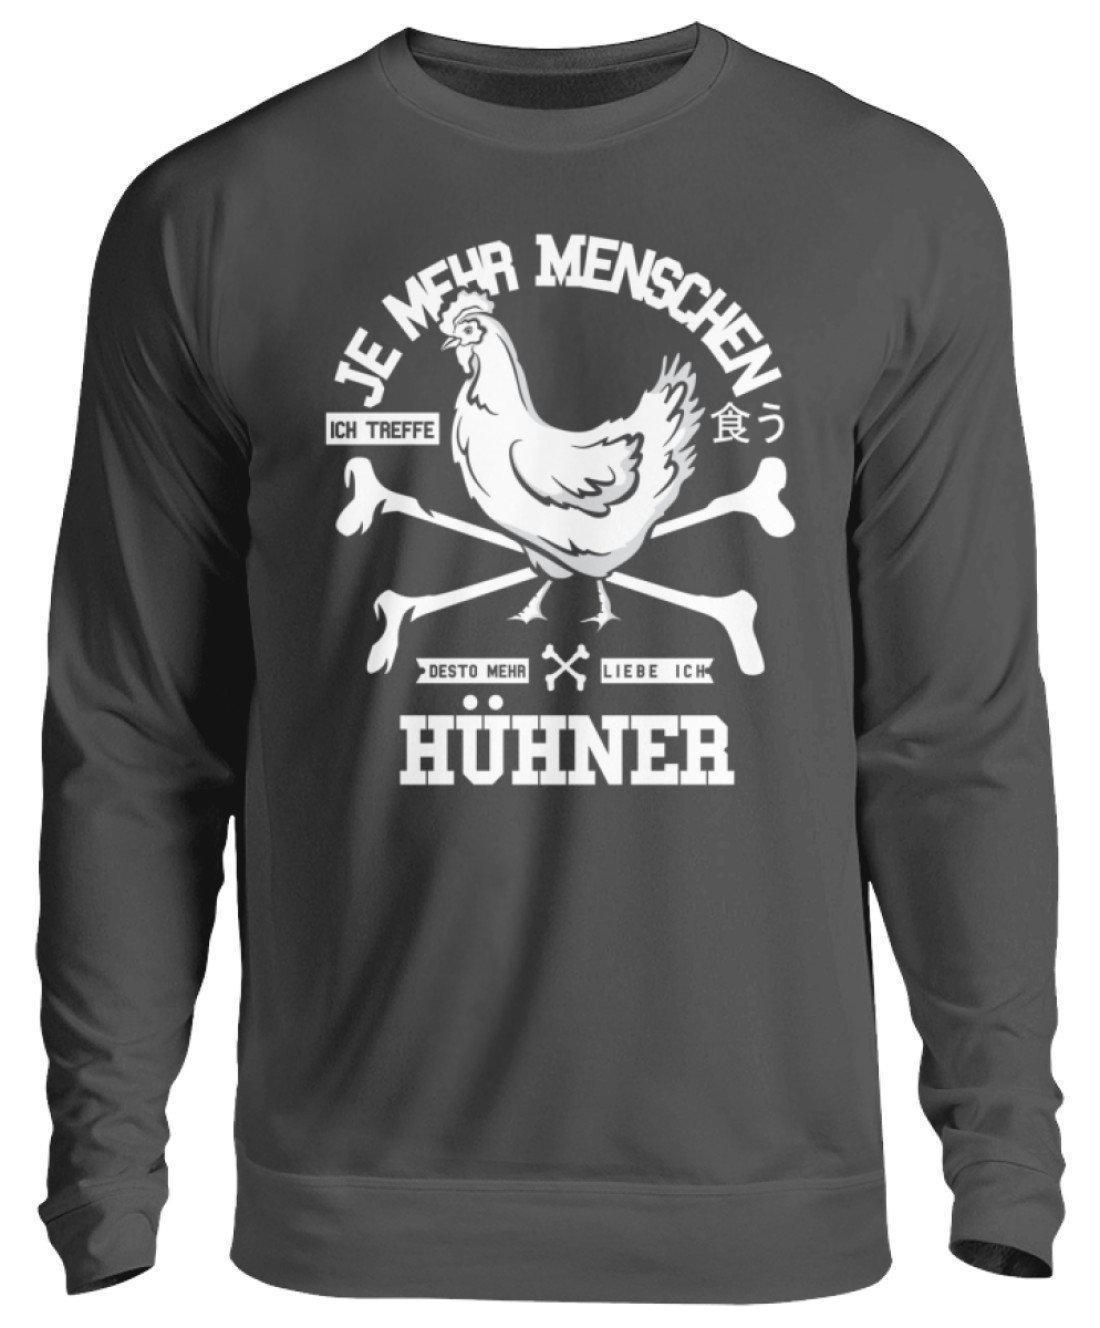 Desto mehr liebe ich Hühner · Unisex Sweatshirt Pullover-Unisex Sweatshirt-Storm Grey (Solid)-S-Agrarstarz